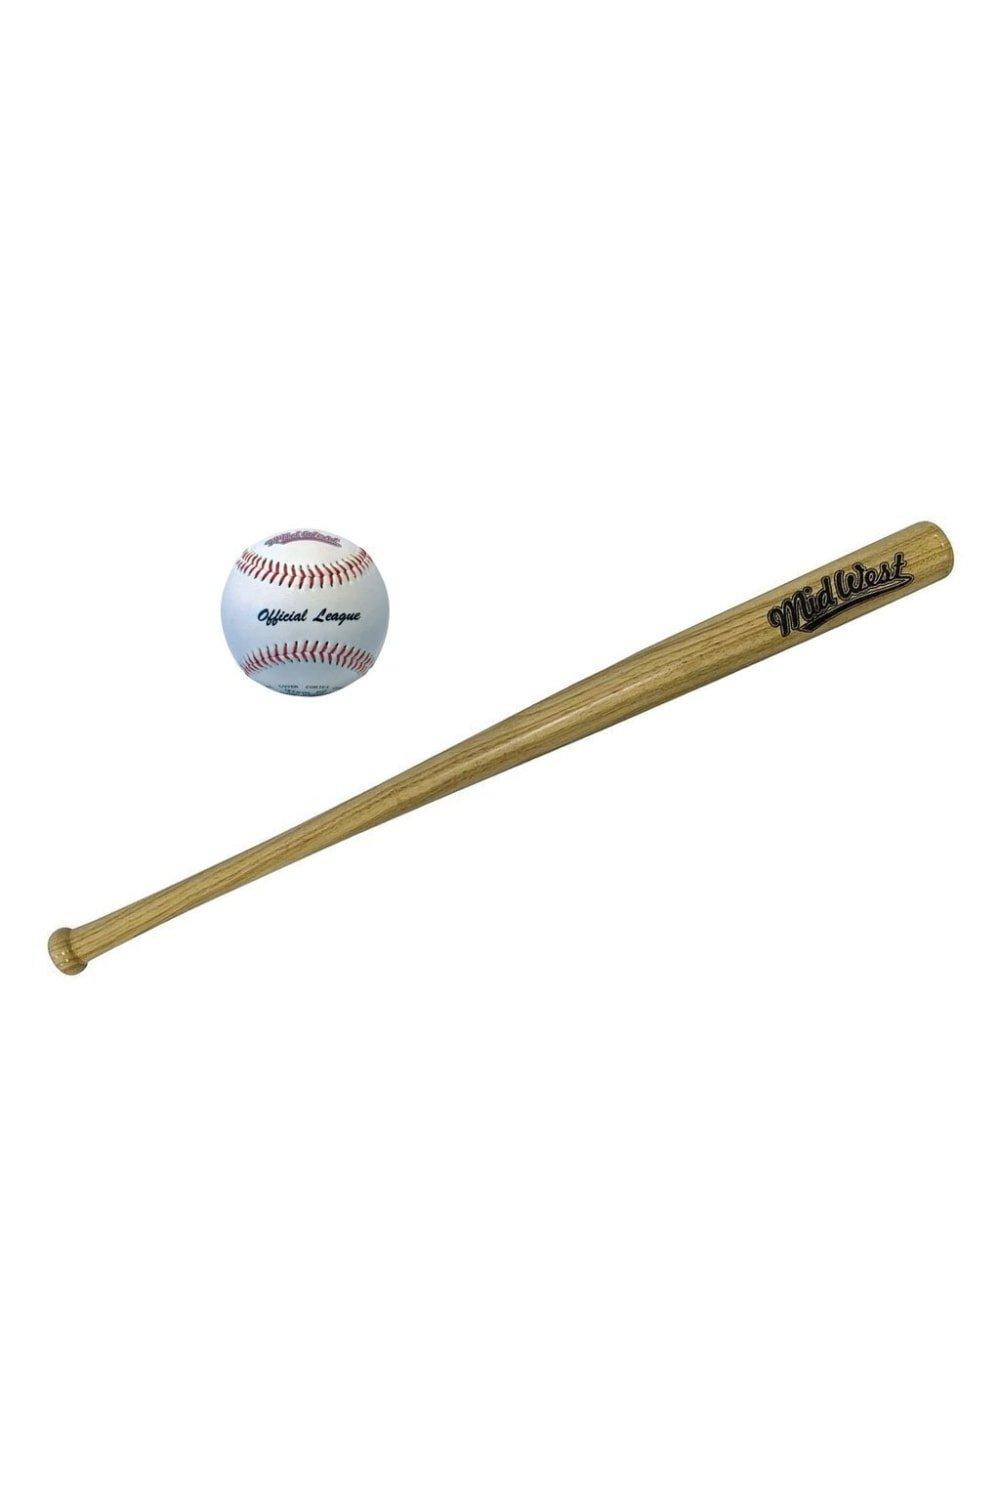 Slugger Baseball Bat